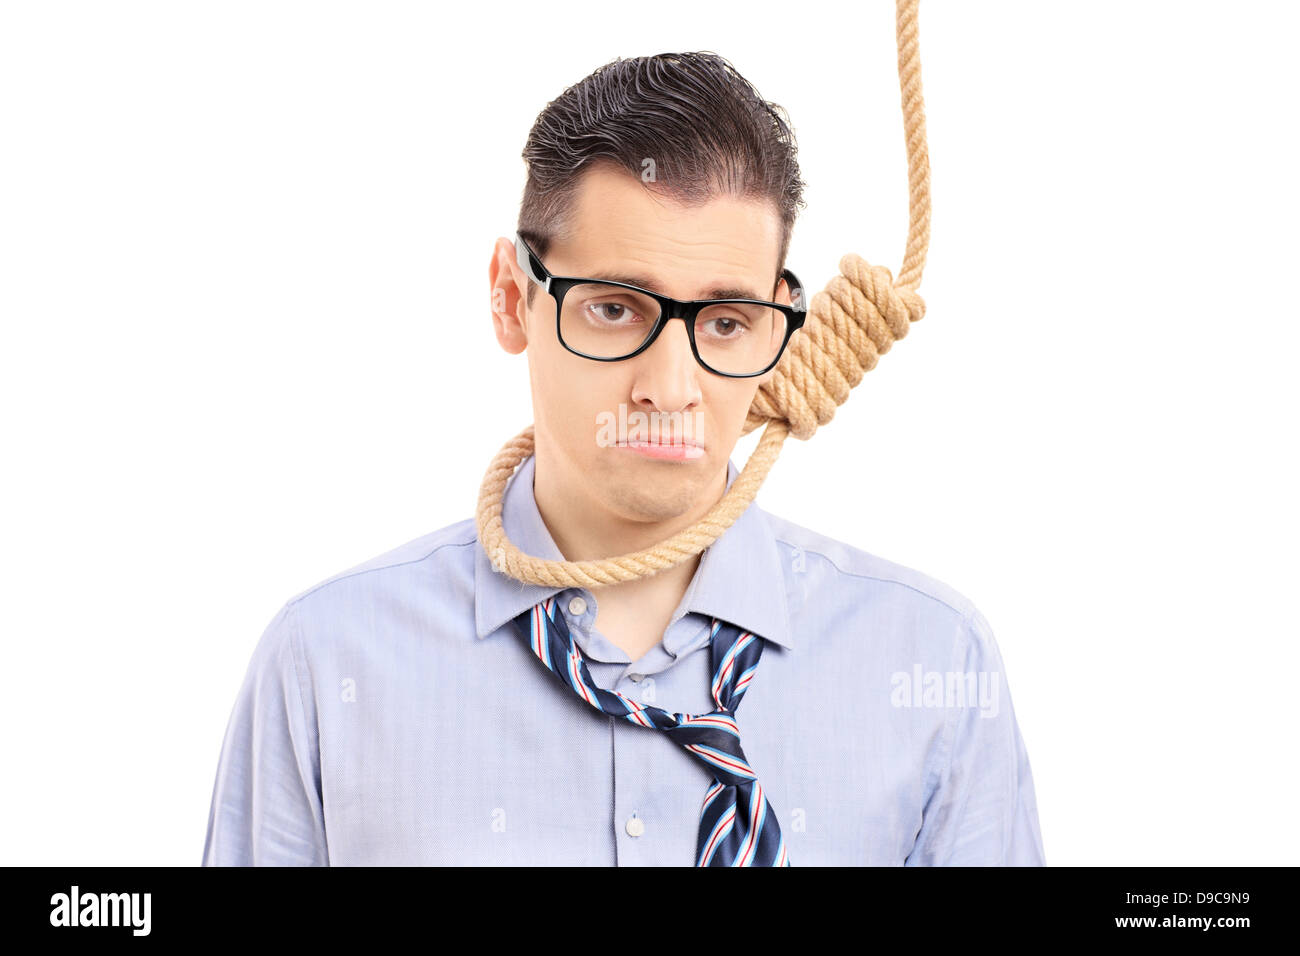 L'exécution d'un homme déprimé de se suicider avec une corde, isolé sur fond blanc Banque D'Images